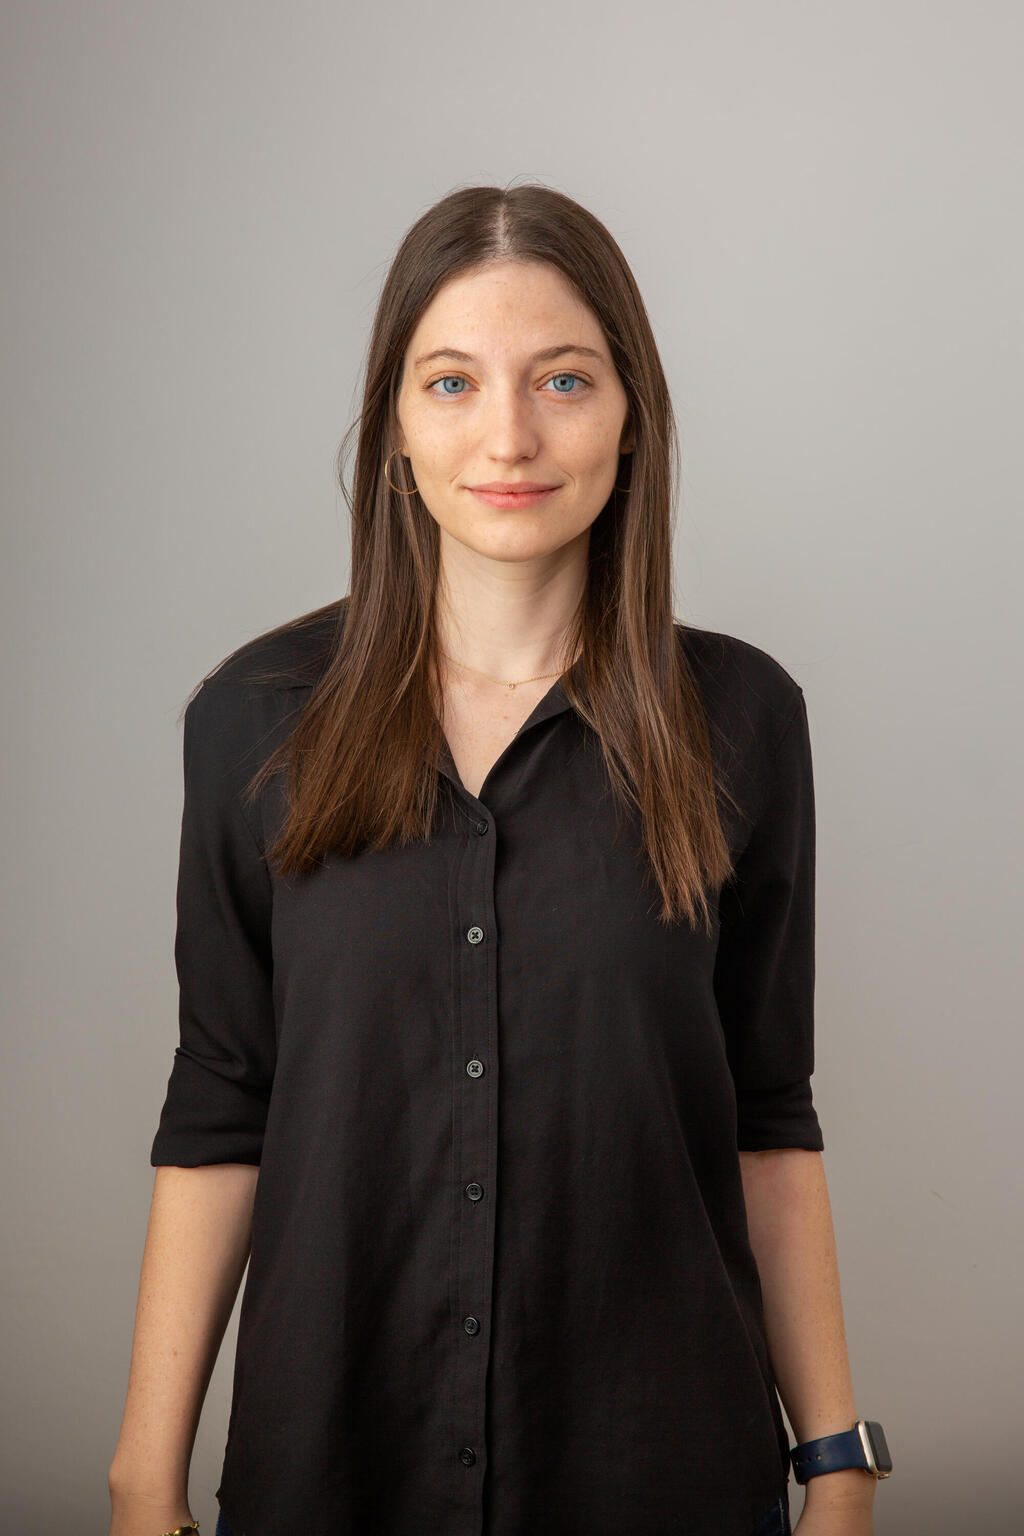 דנה מיולגאי סמנכ"לית מוצר,מייסדת שותפה בחברת פיבו